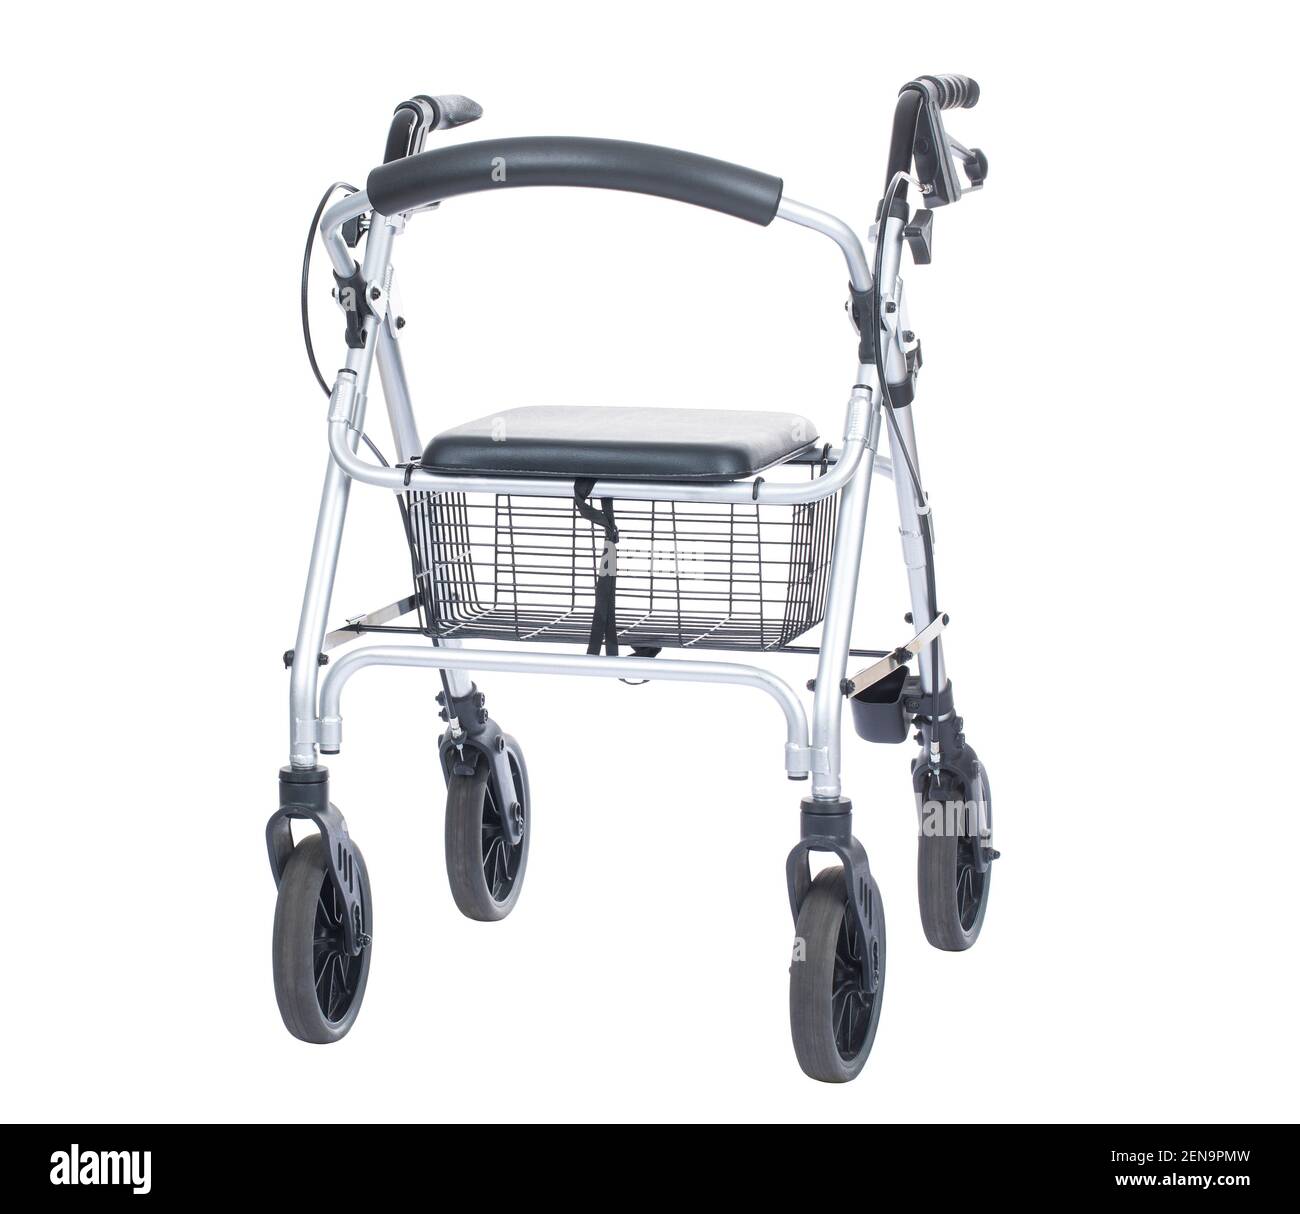 Elderly people walker with wheels, rollator walkers, ambulatory assistive  device, walking aid, walker Stock Photo - Alamy